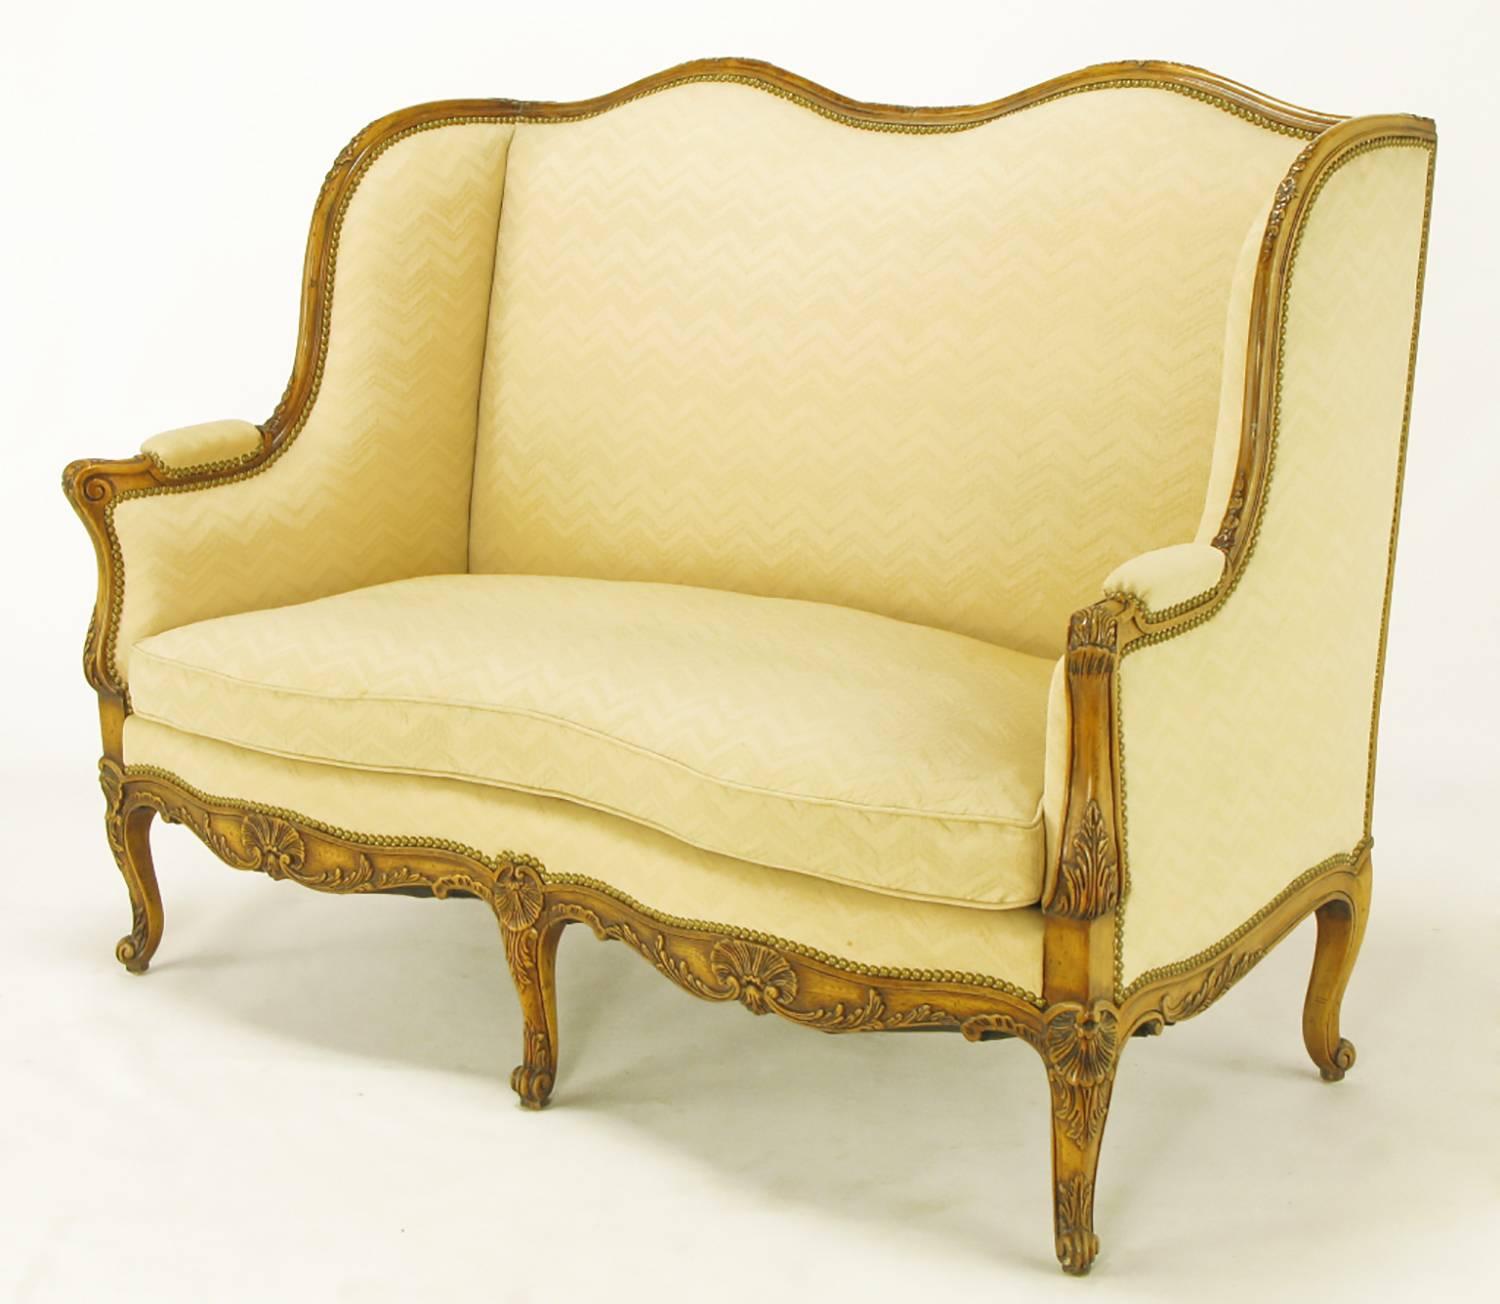 Dieses schöne Stück ist eine fein gearbeitete Reproduktion eines französischen Sofas aus dem 18. Jahrhundert mit einem kunstvoll geschnitzten Rahmen aus Walnussholz. Die hölzernen Arme und Cabriole-Beine sind mit Akanthusblättern verziert, während